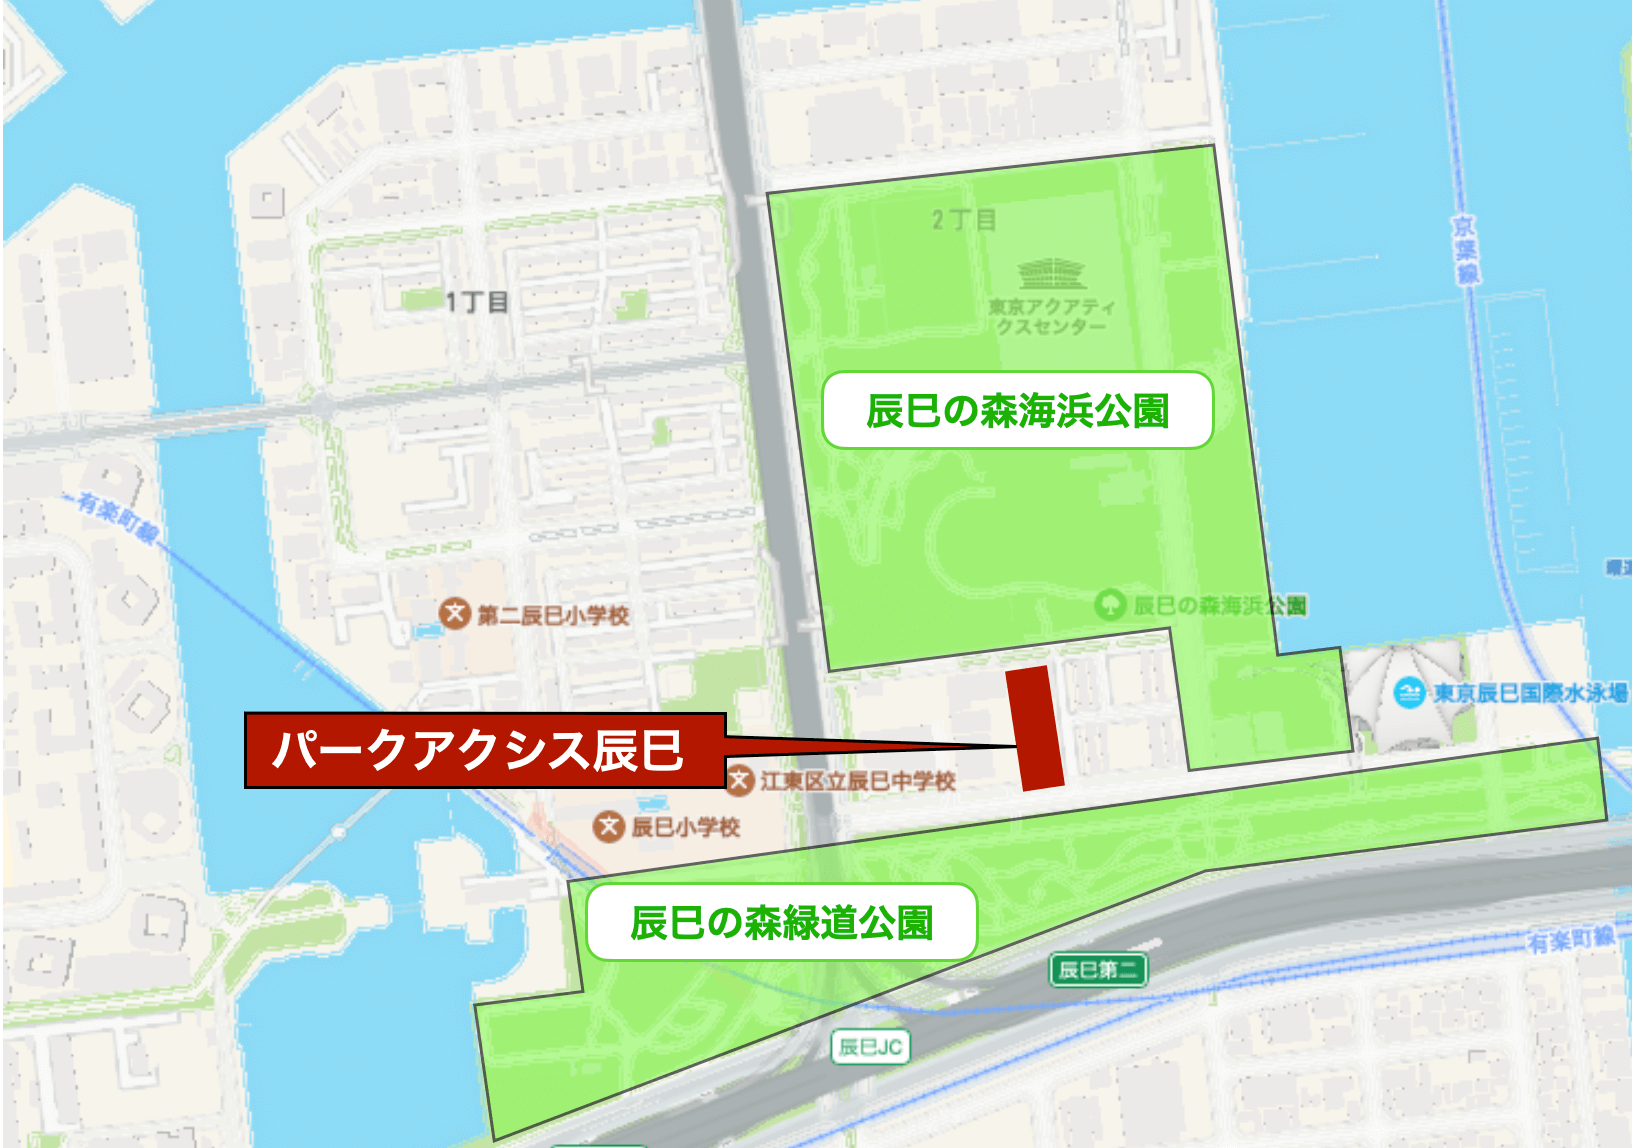 辰巳の公園を示したマップ